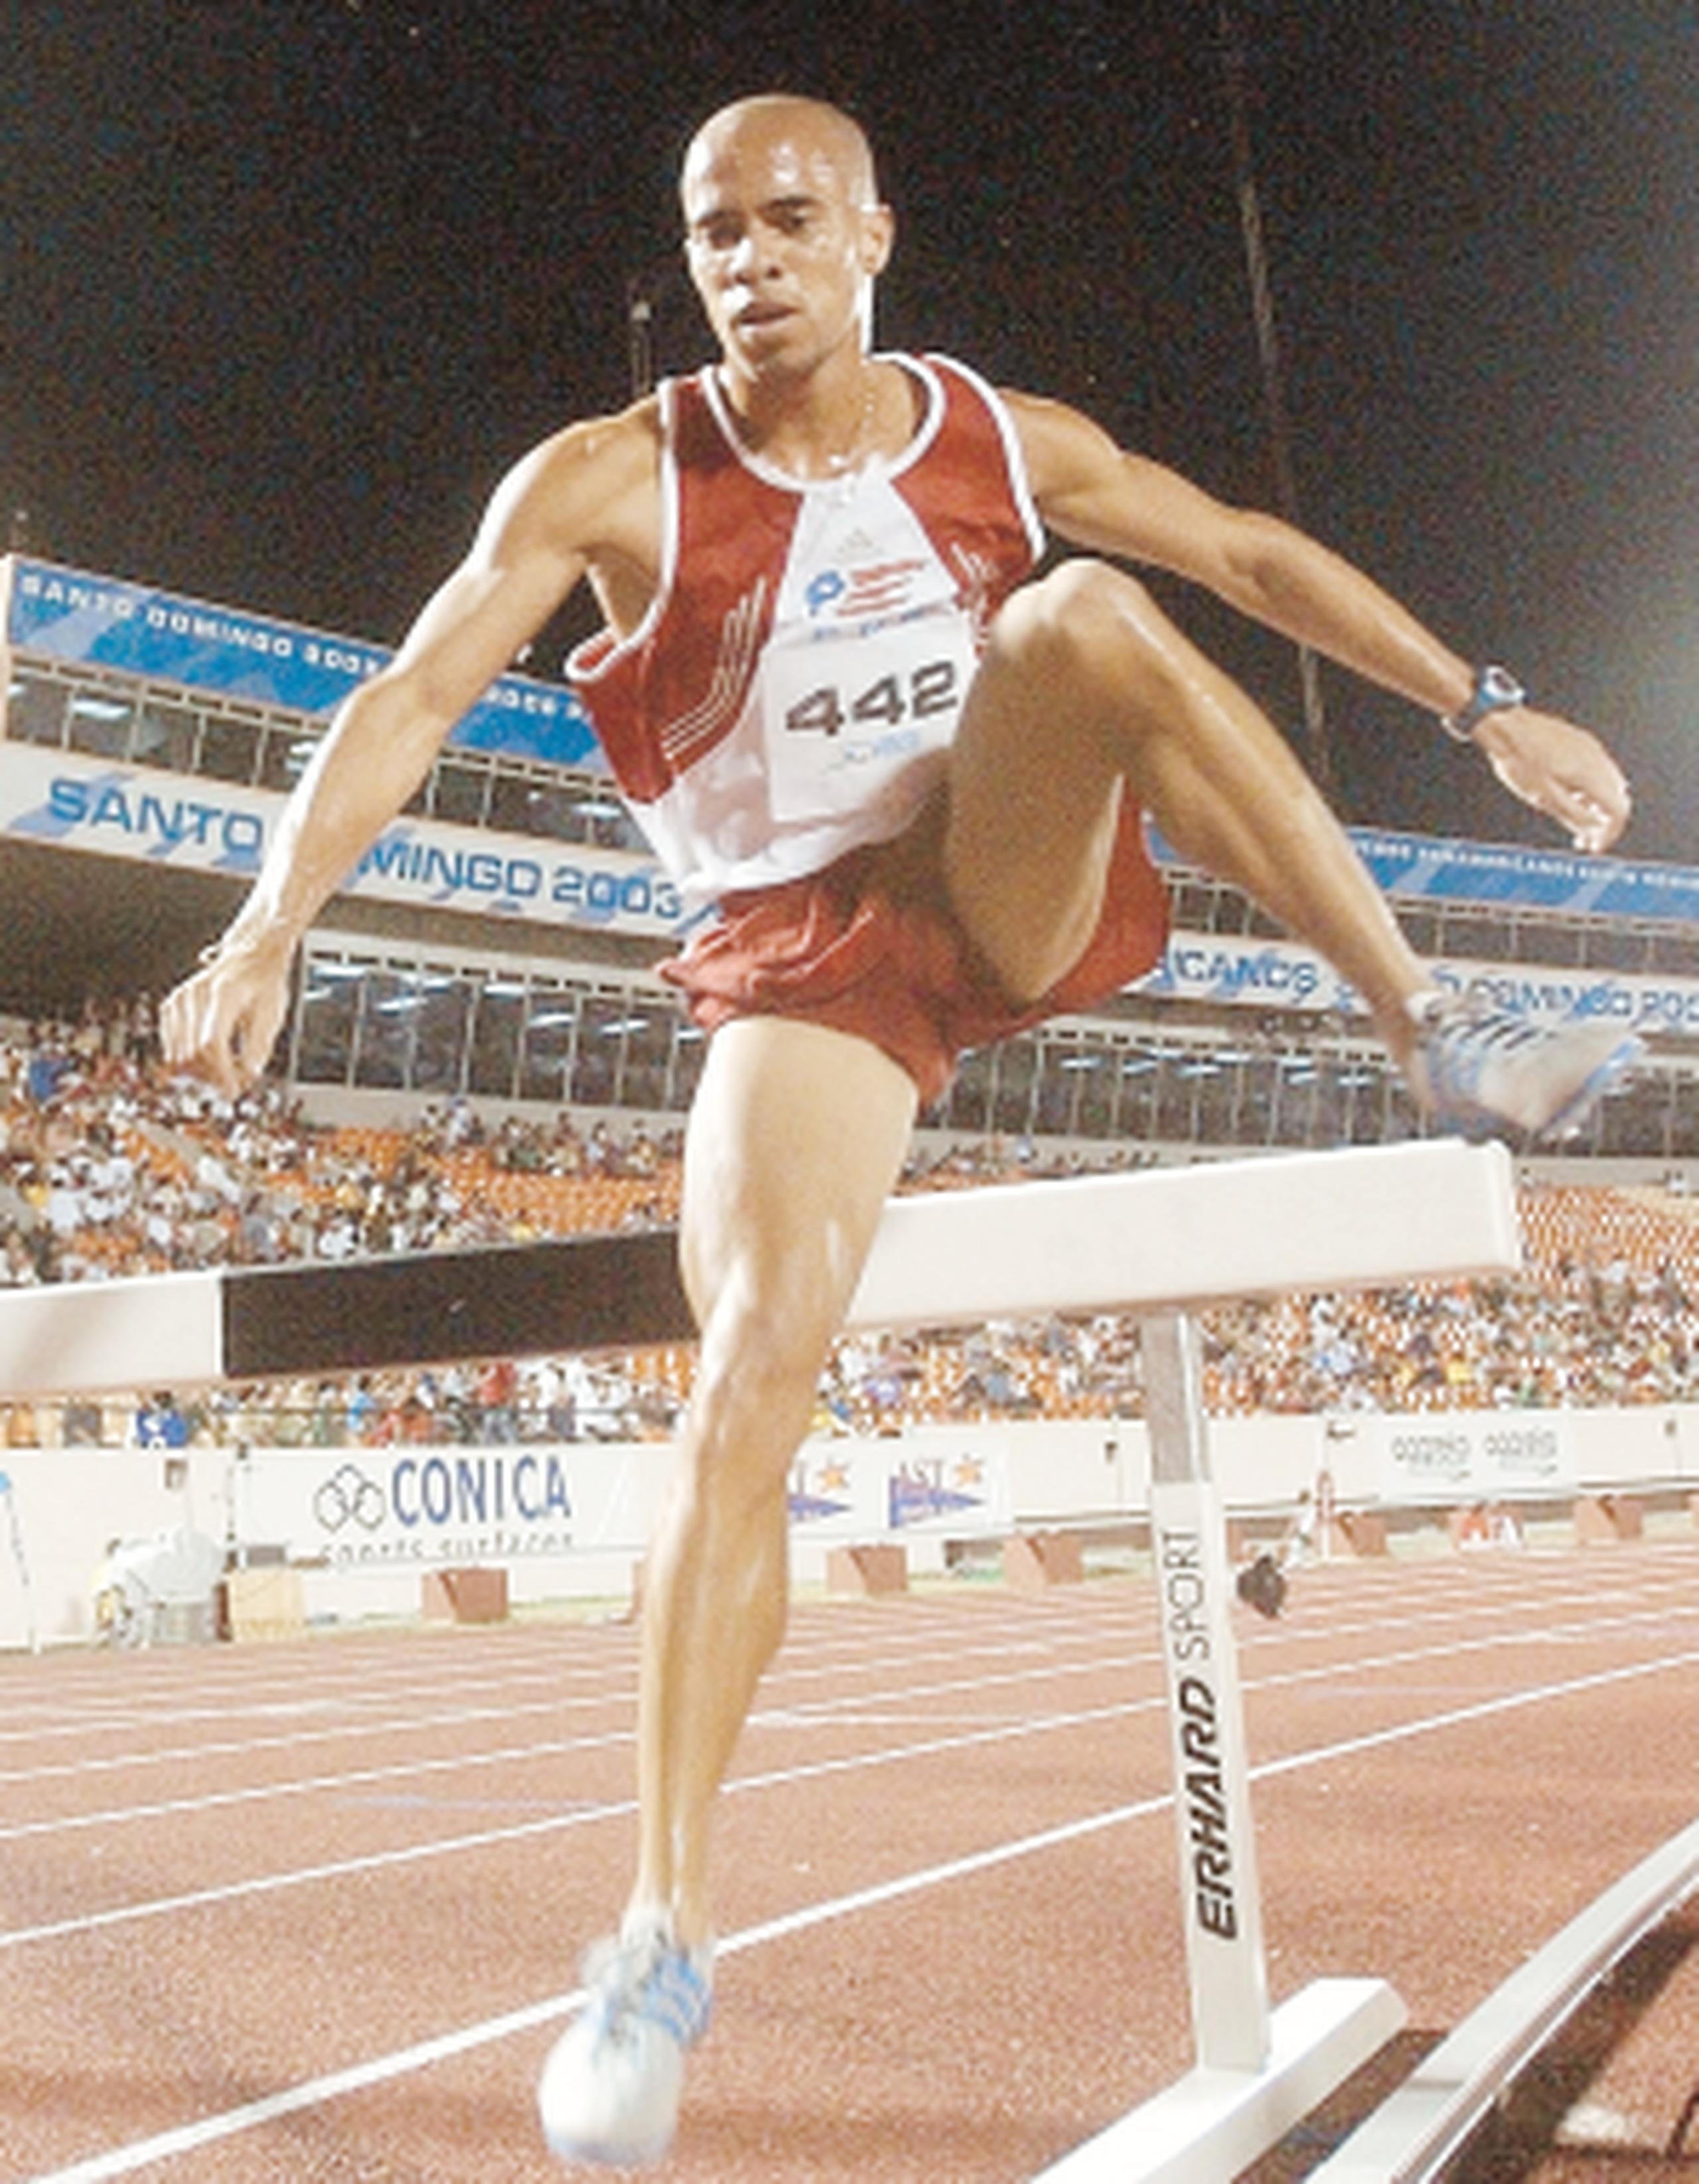 El excorredor olímpico y poseedor del récord nacional de la prueba de 3,000 metros con obstáculos, era actualmente entrenador de semifondo en el Albergue Olímpico y la Universi-dad del Turabo. (Archivo)